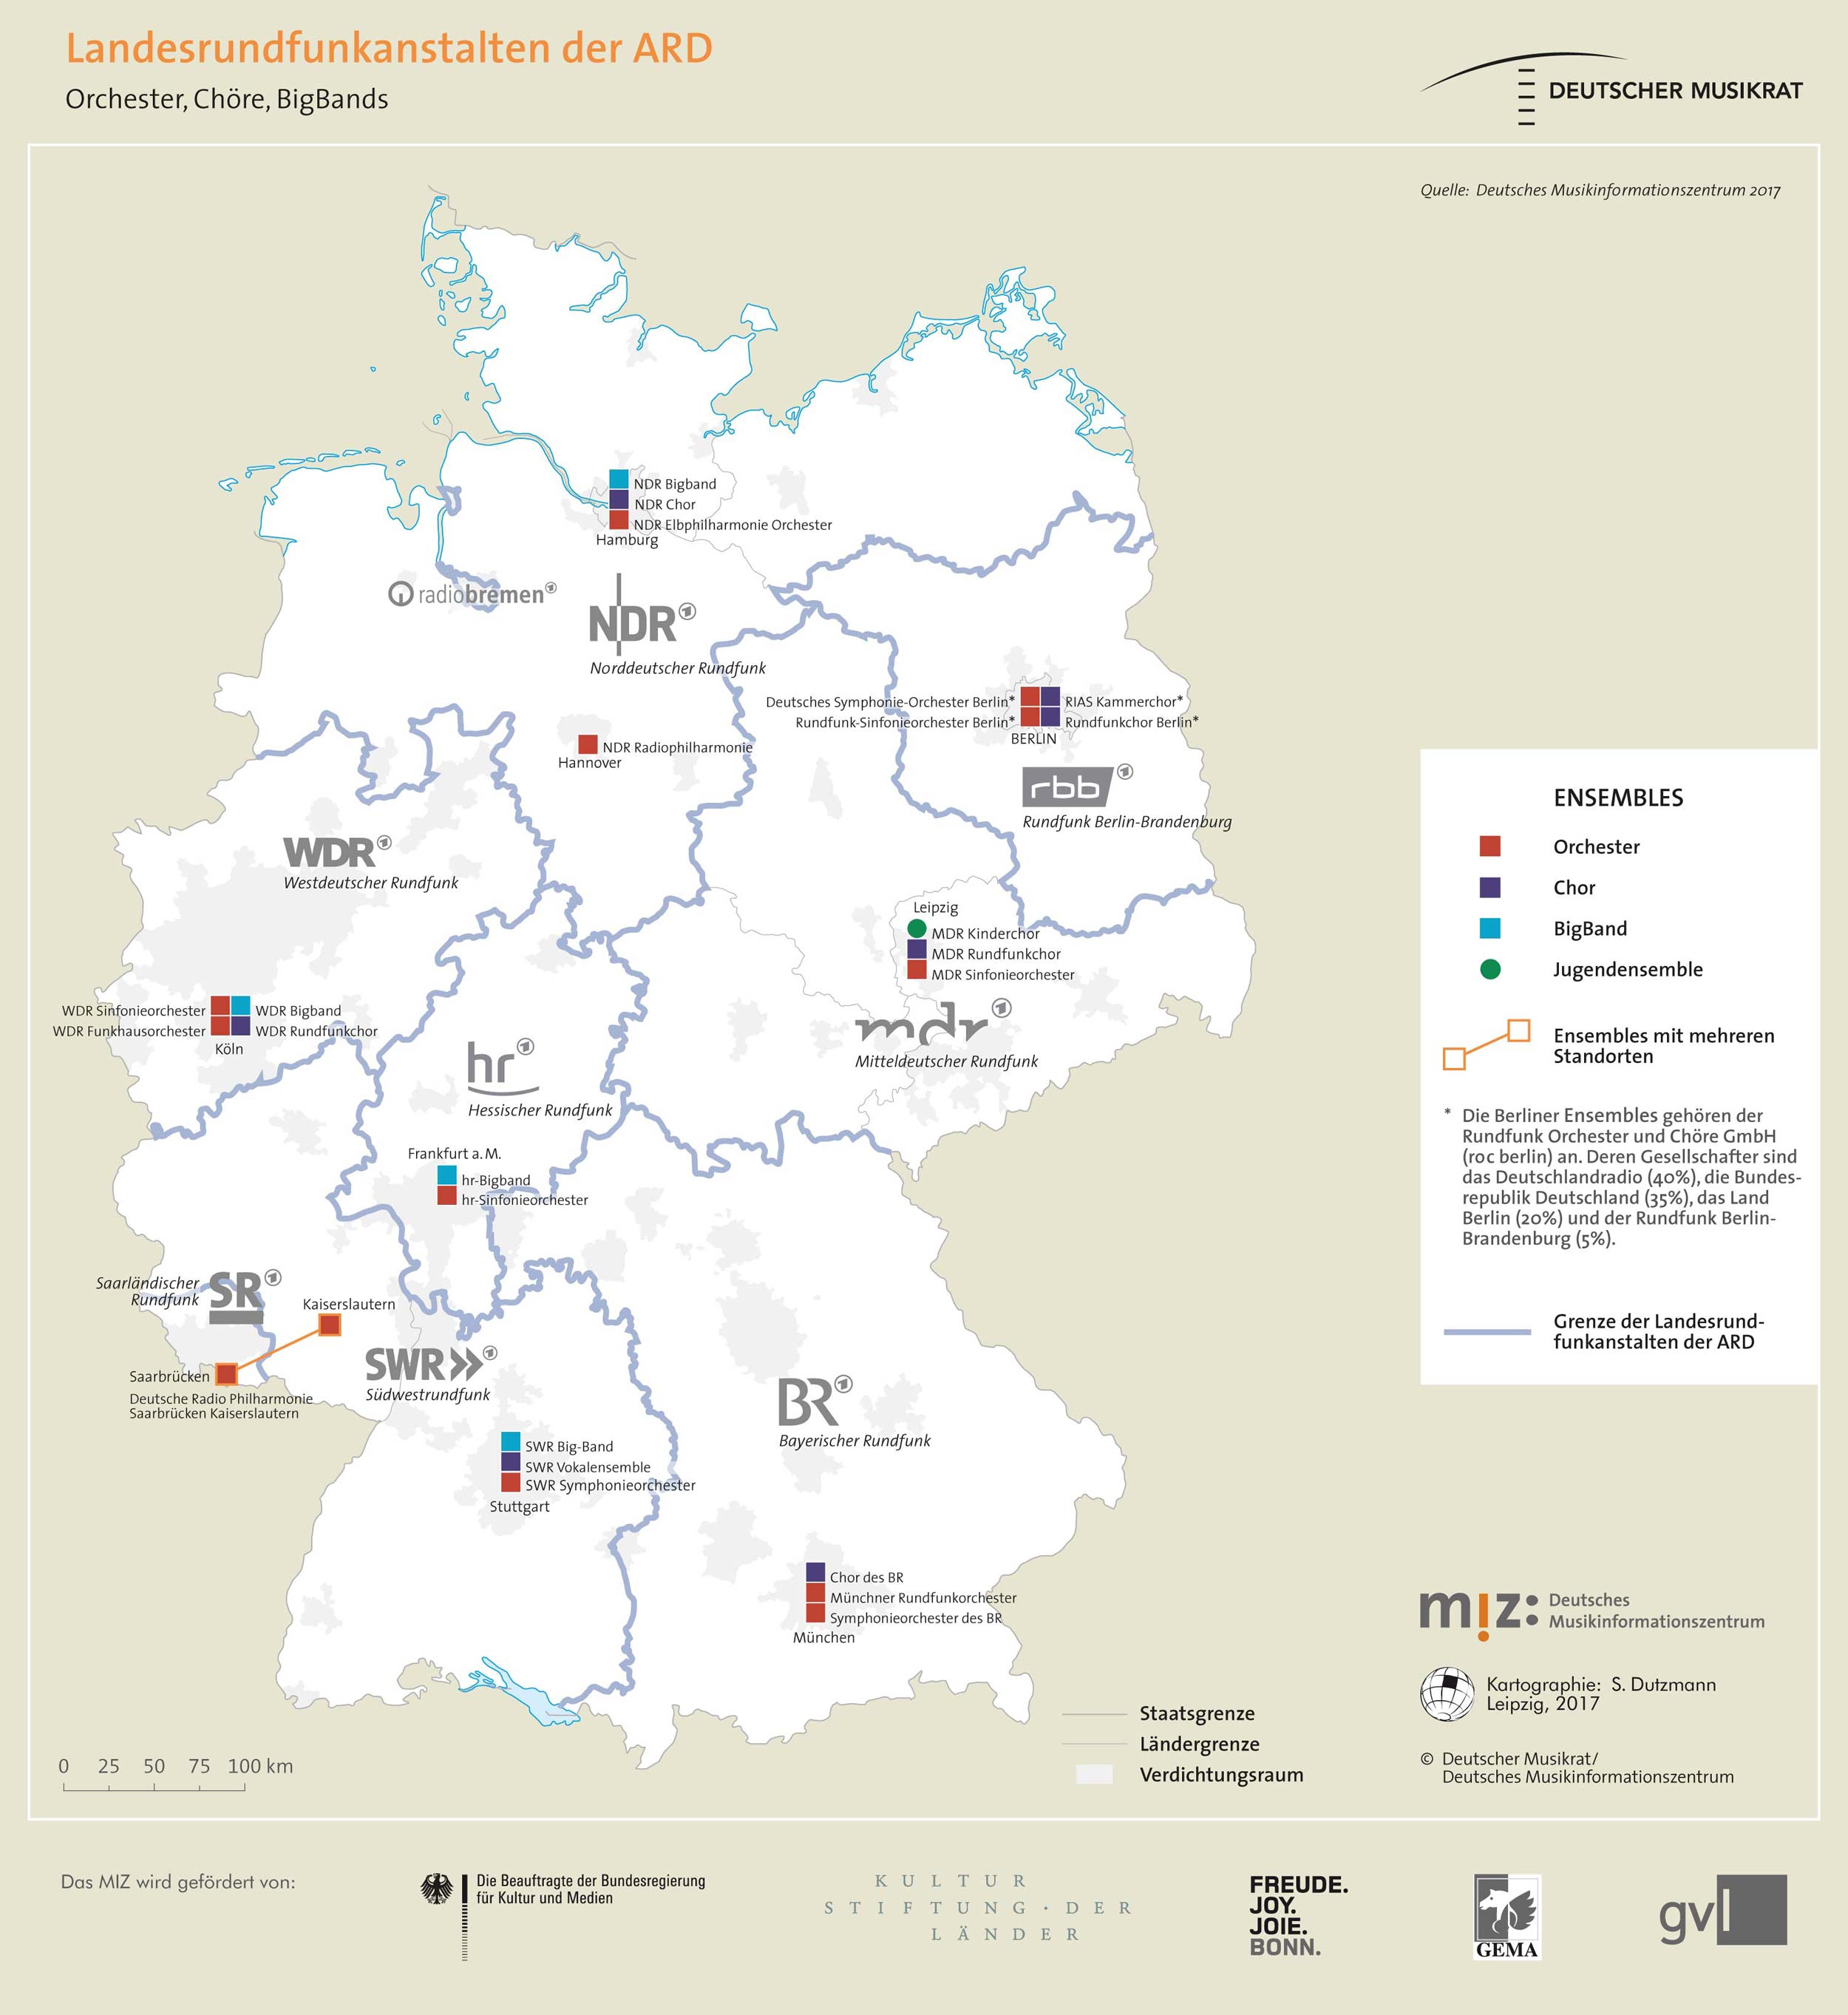 Topografie: Landesrundfunkanstalten der ARD in Deutschland